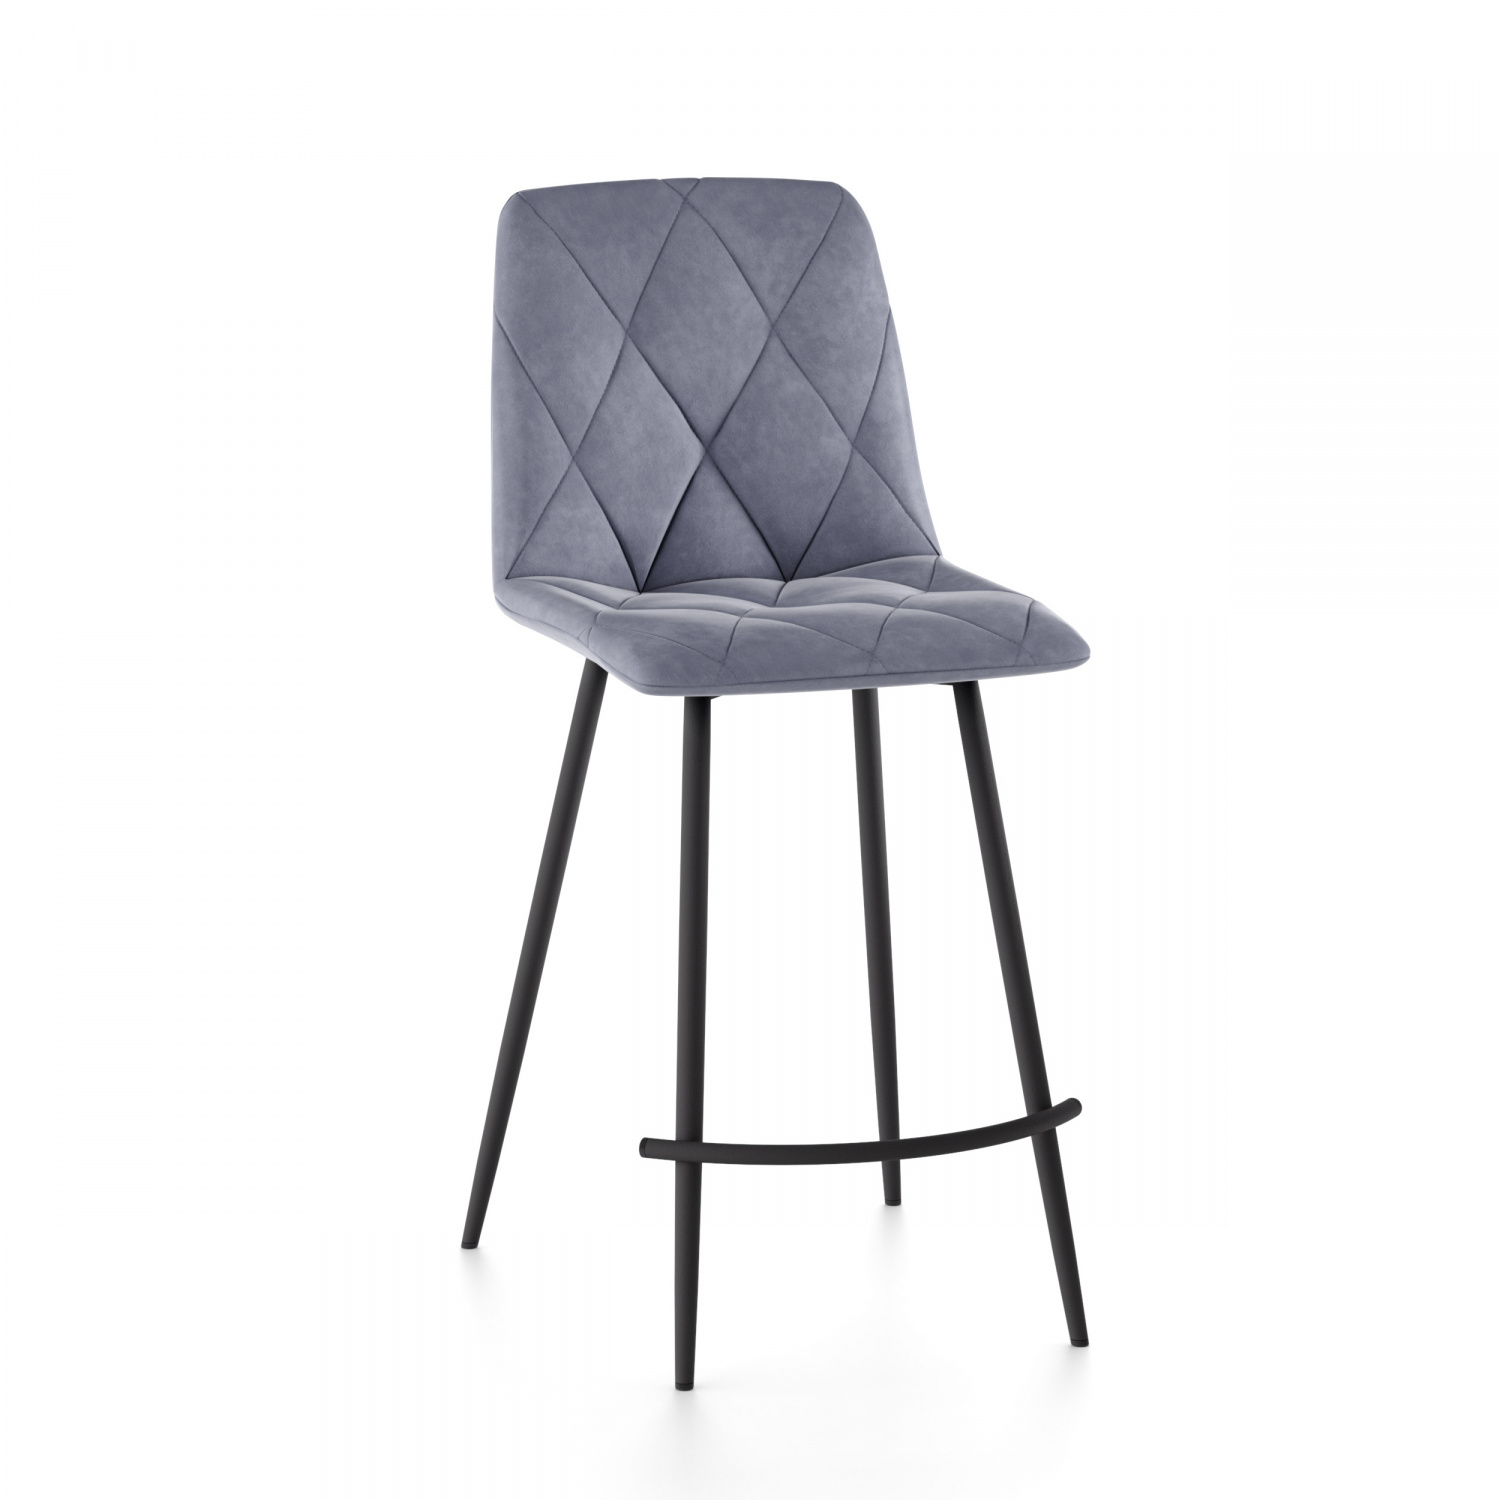 Полубарный стул СтолБери 2622903, черный/серый - купить в СтолБери, цена на Мегамаркет